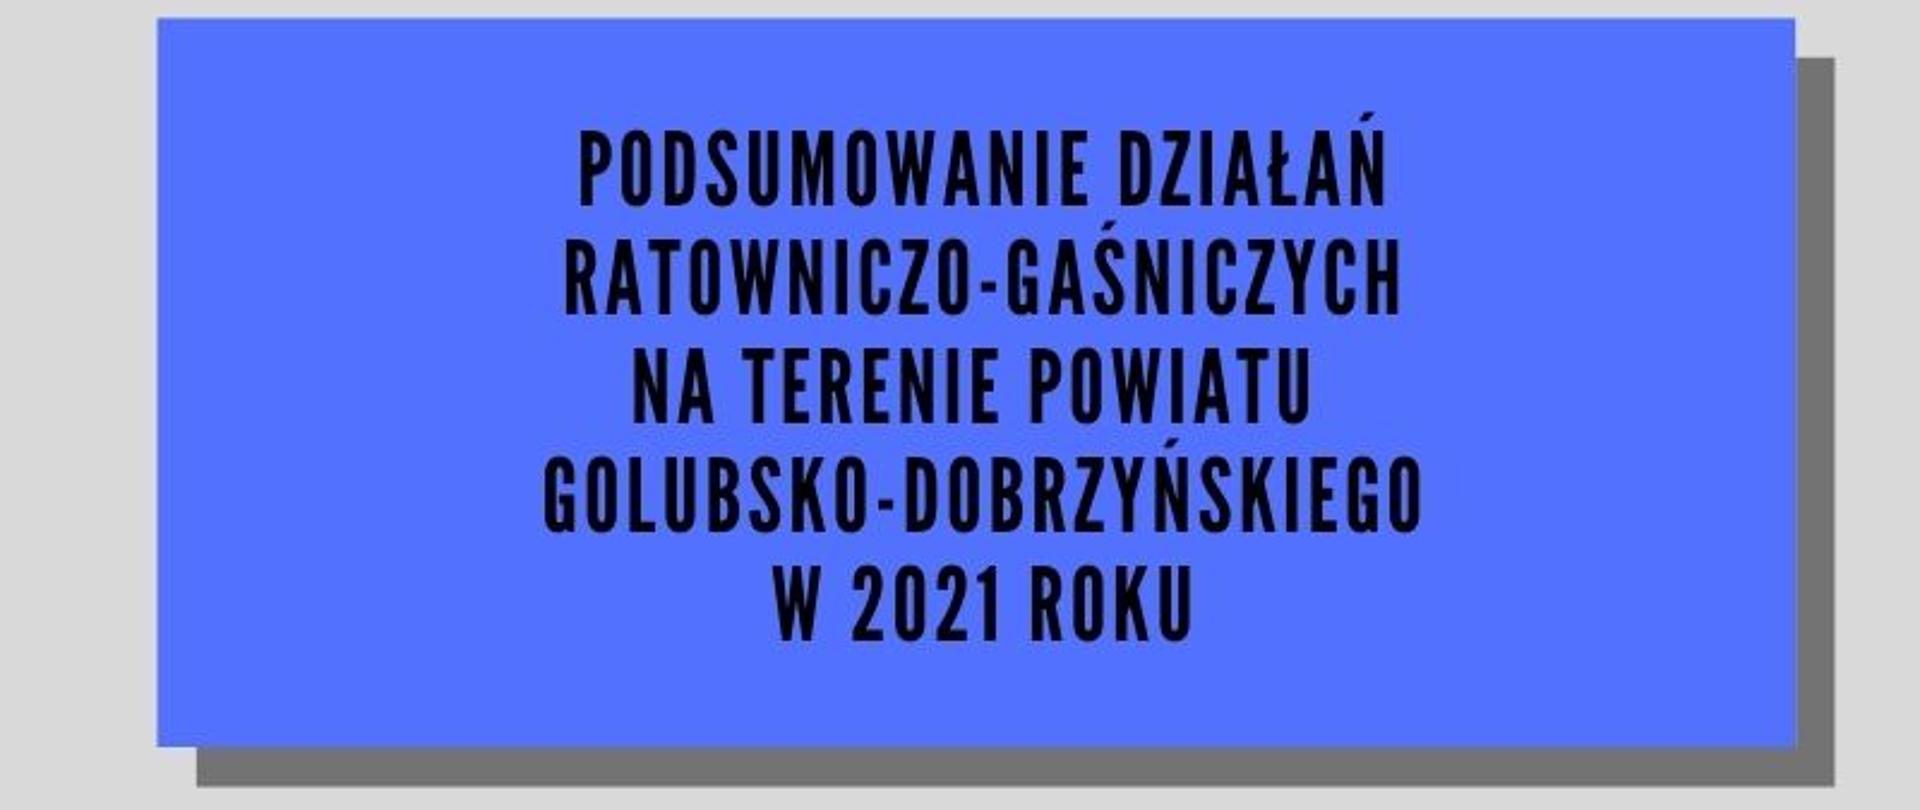 Ikonografika przedstawia ilość zdarzeń , które miały miejsce na terenie powiatu golubsko-dobrzyńskiego w roku 2021 za pomocą ikon oraz wykresu kołowego w odcieniach koloru niebieskiego.